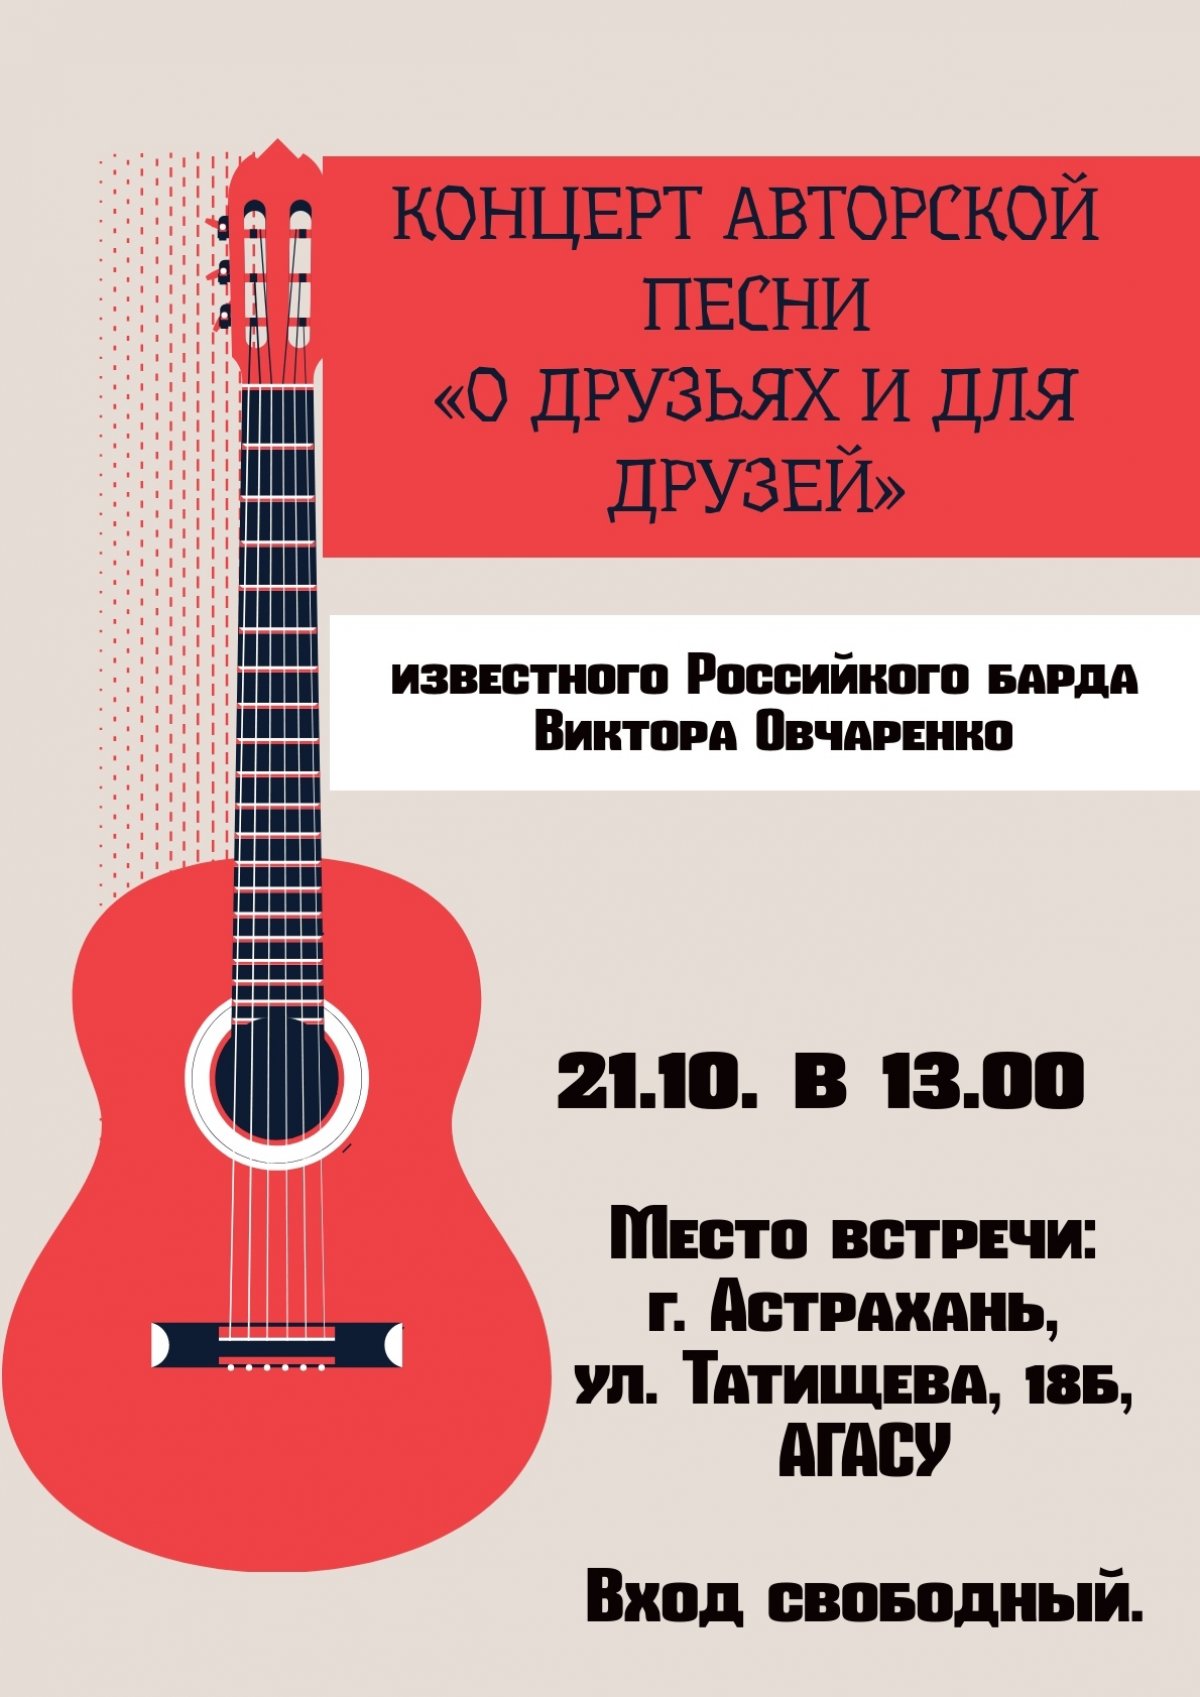 Приглашаем 21 октября в 13-00 на концерт авторской песни «О друзьях и для друзей» известного Российкого барда Виктора Овчаренко.